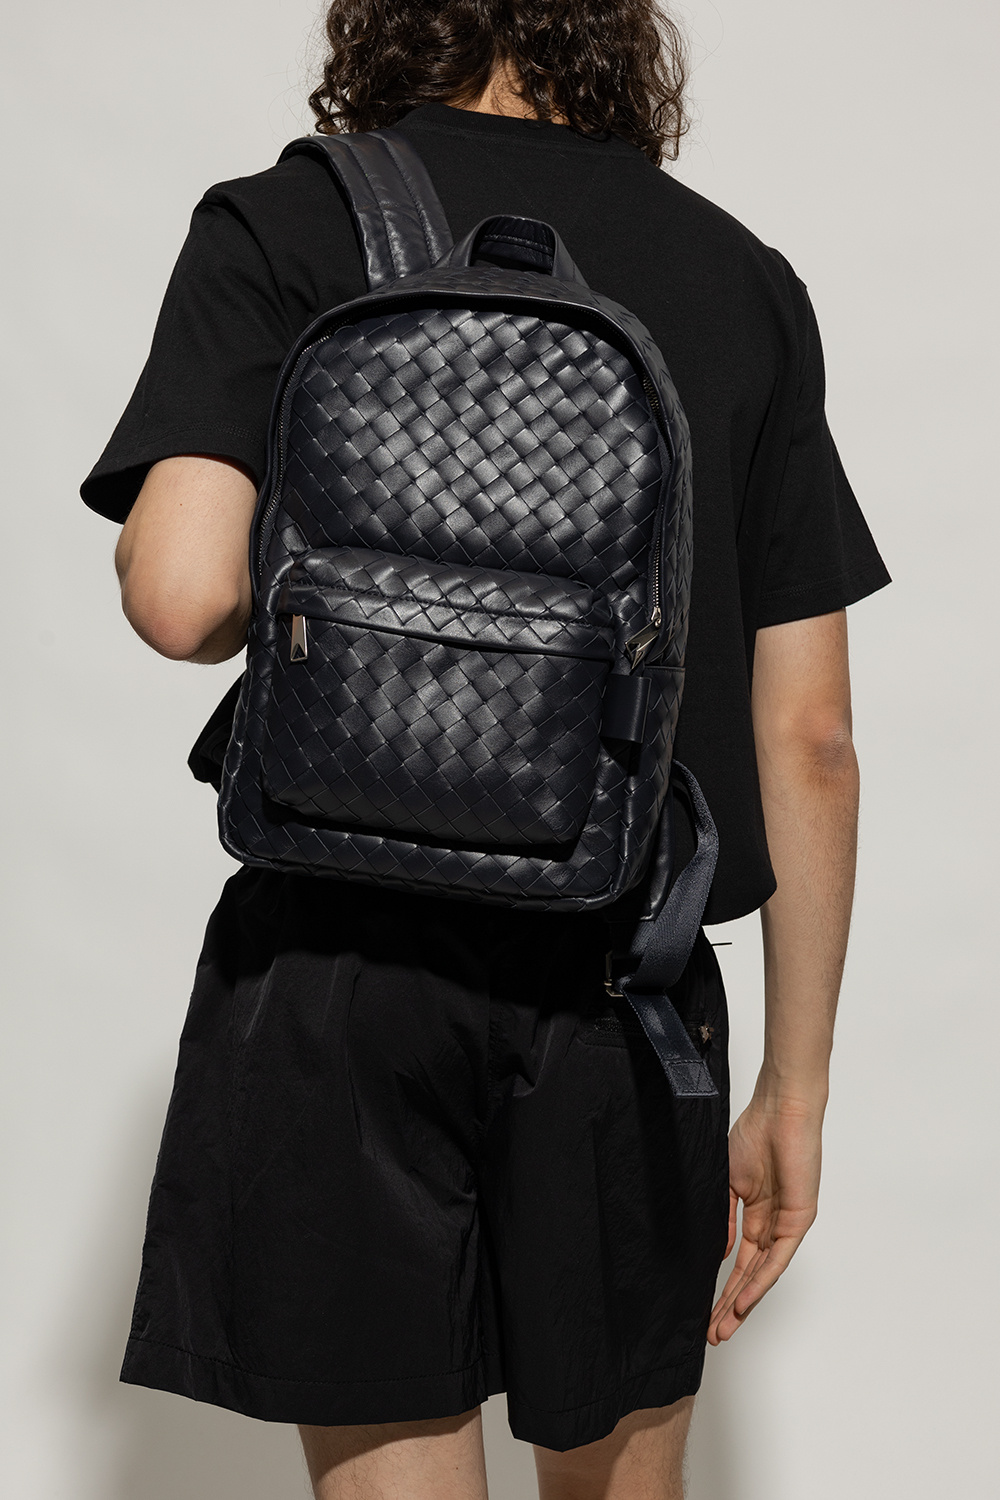 Navy Intrecciato-leather backpack, Bottega Veneta